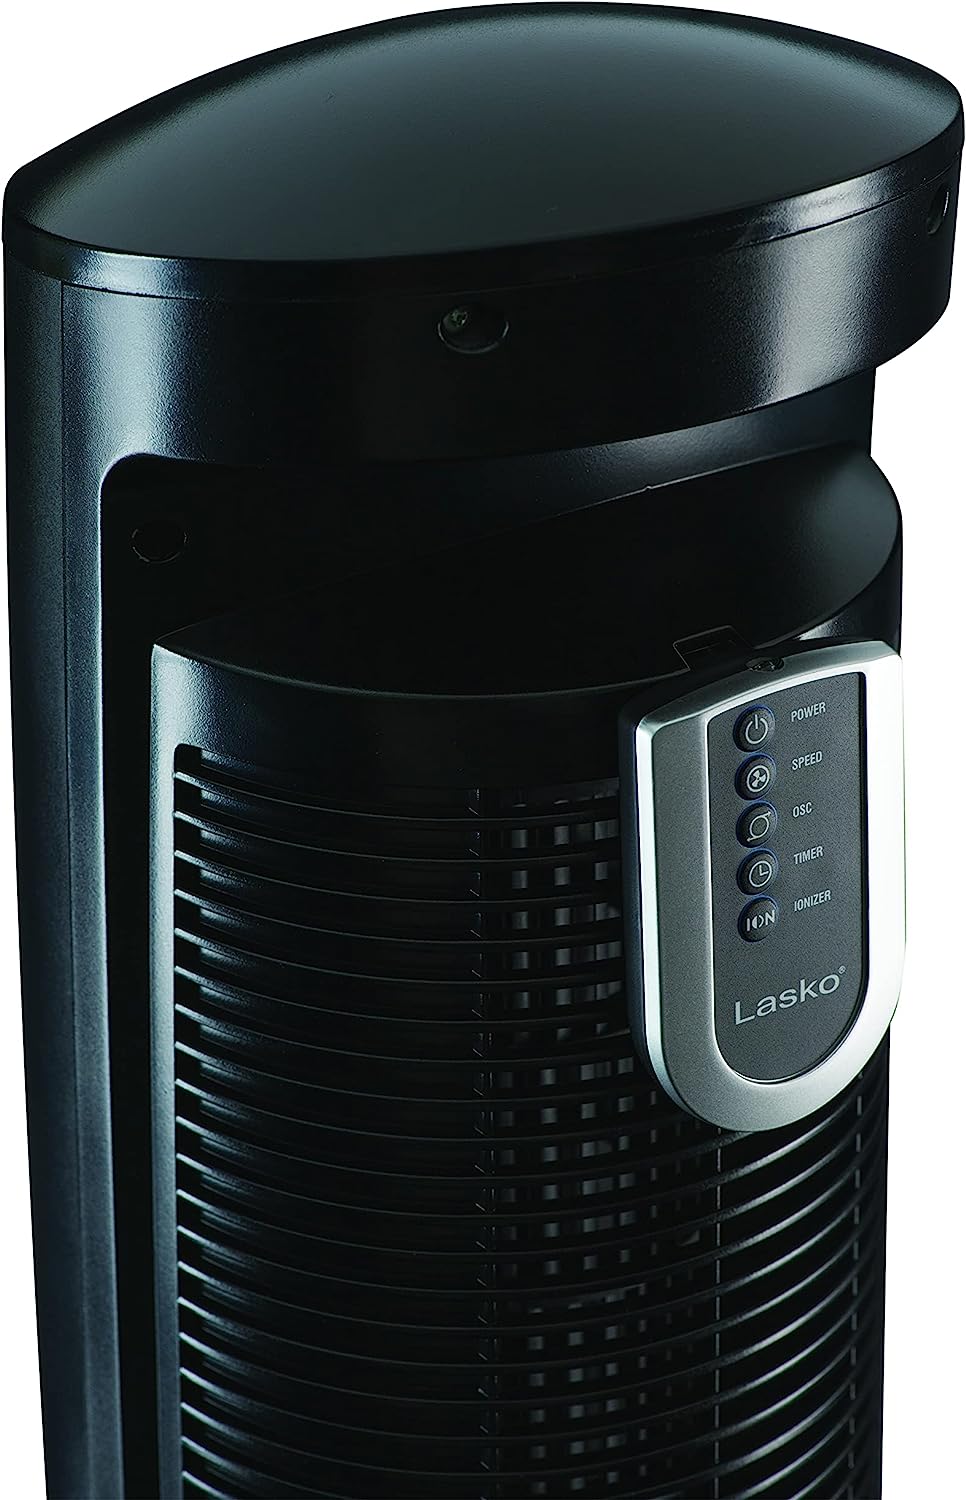 Ventilador de torre oscilante Lasko, control remoto, ionizador, 3 velocidades, temporizador, para dormitorio, oficina, cocina 42", negro, T42950